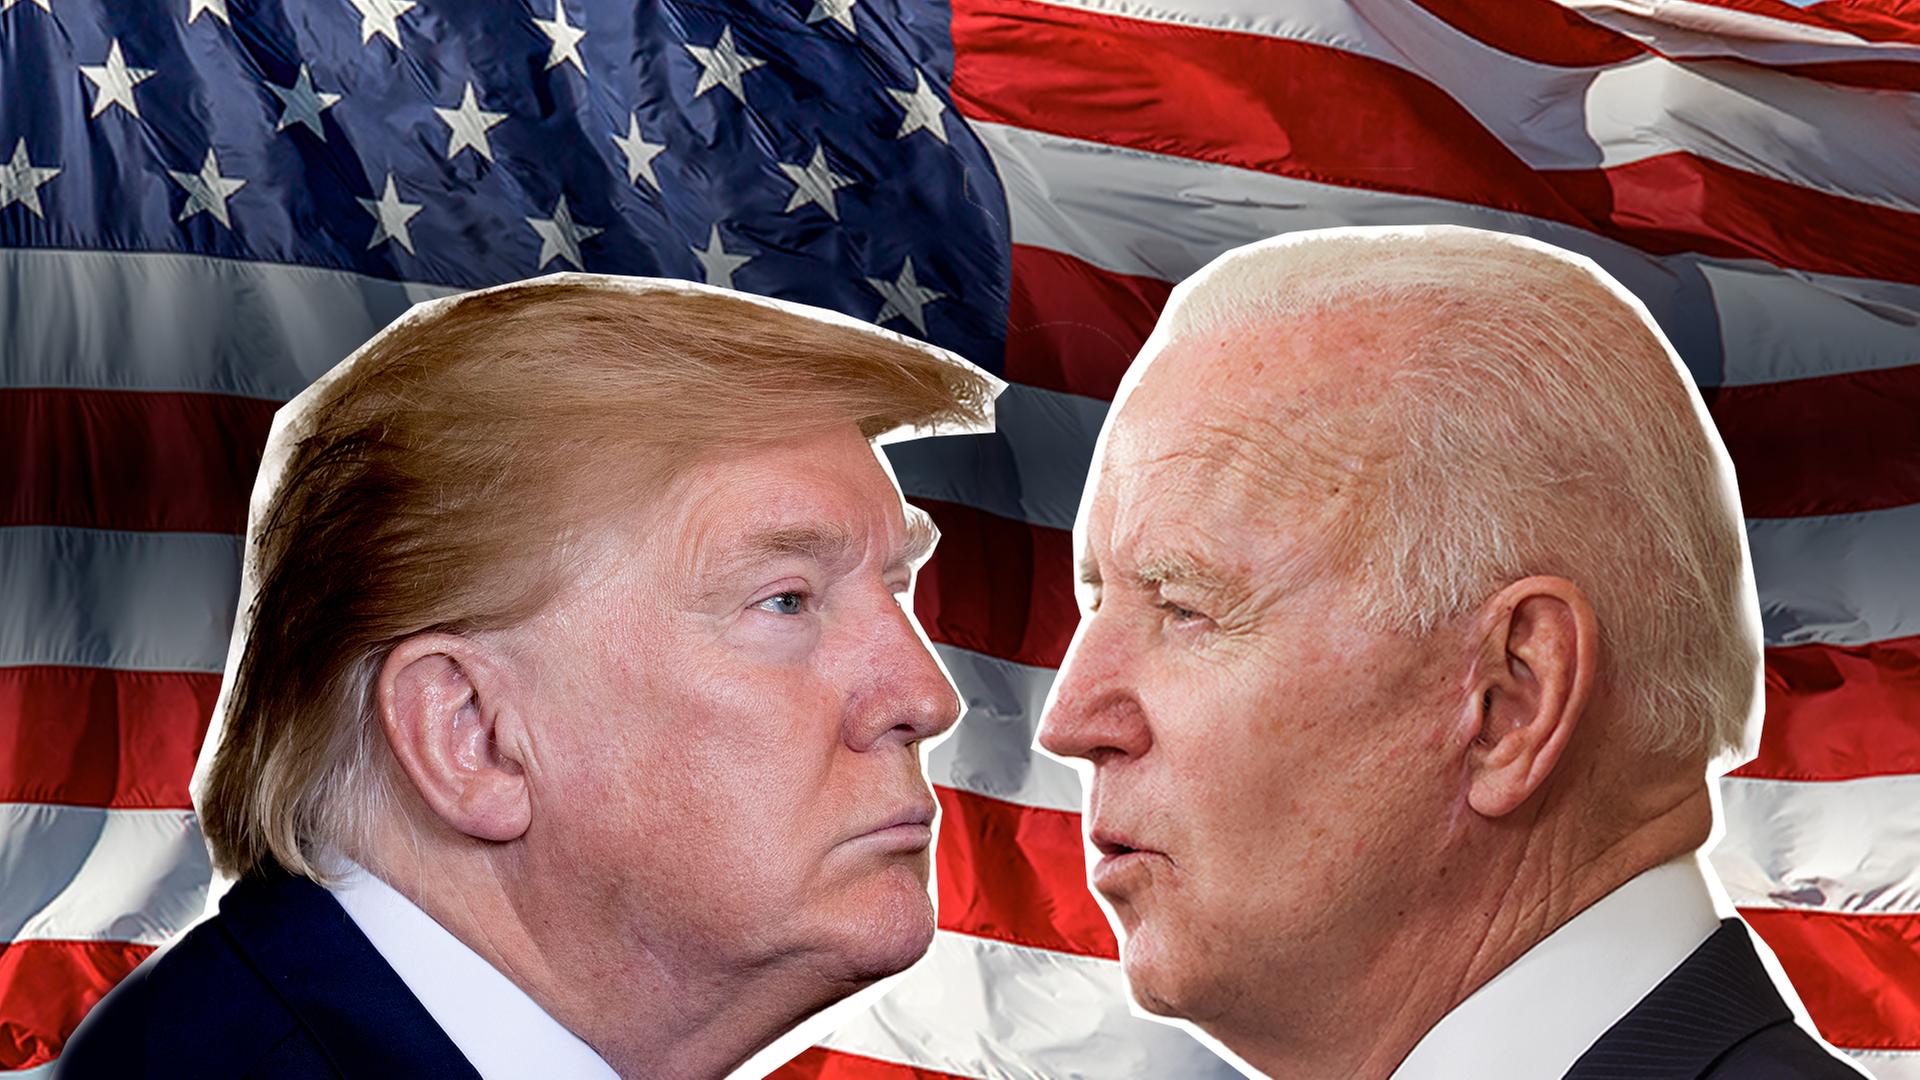 Collage: Die Gesichter von Joe Biden und Donald Trump im Profil. Im Hintergrund eine US-amerikanische Flagge.